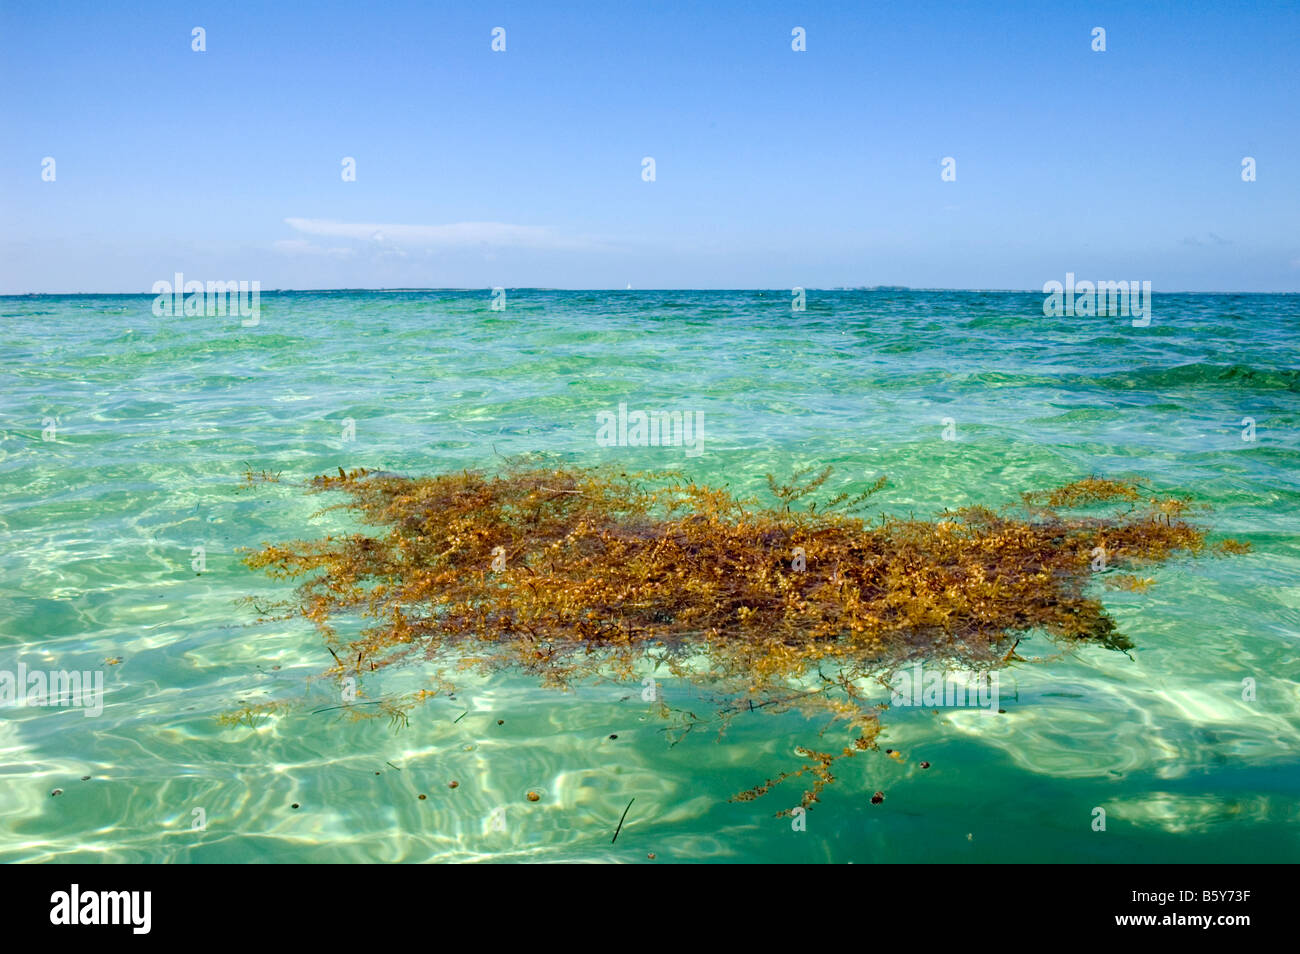 Floating Seaweed, Nassau, Bahamas Stock Photo Alamy